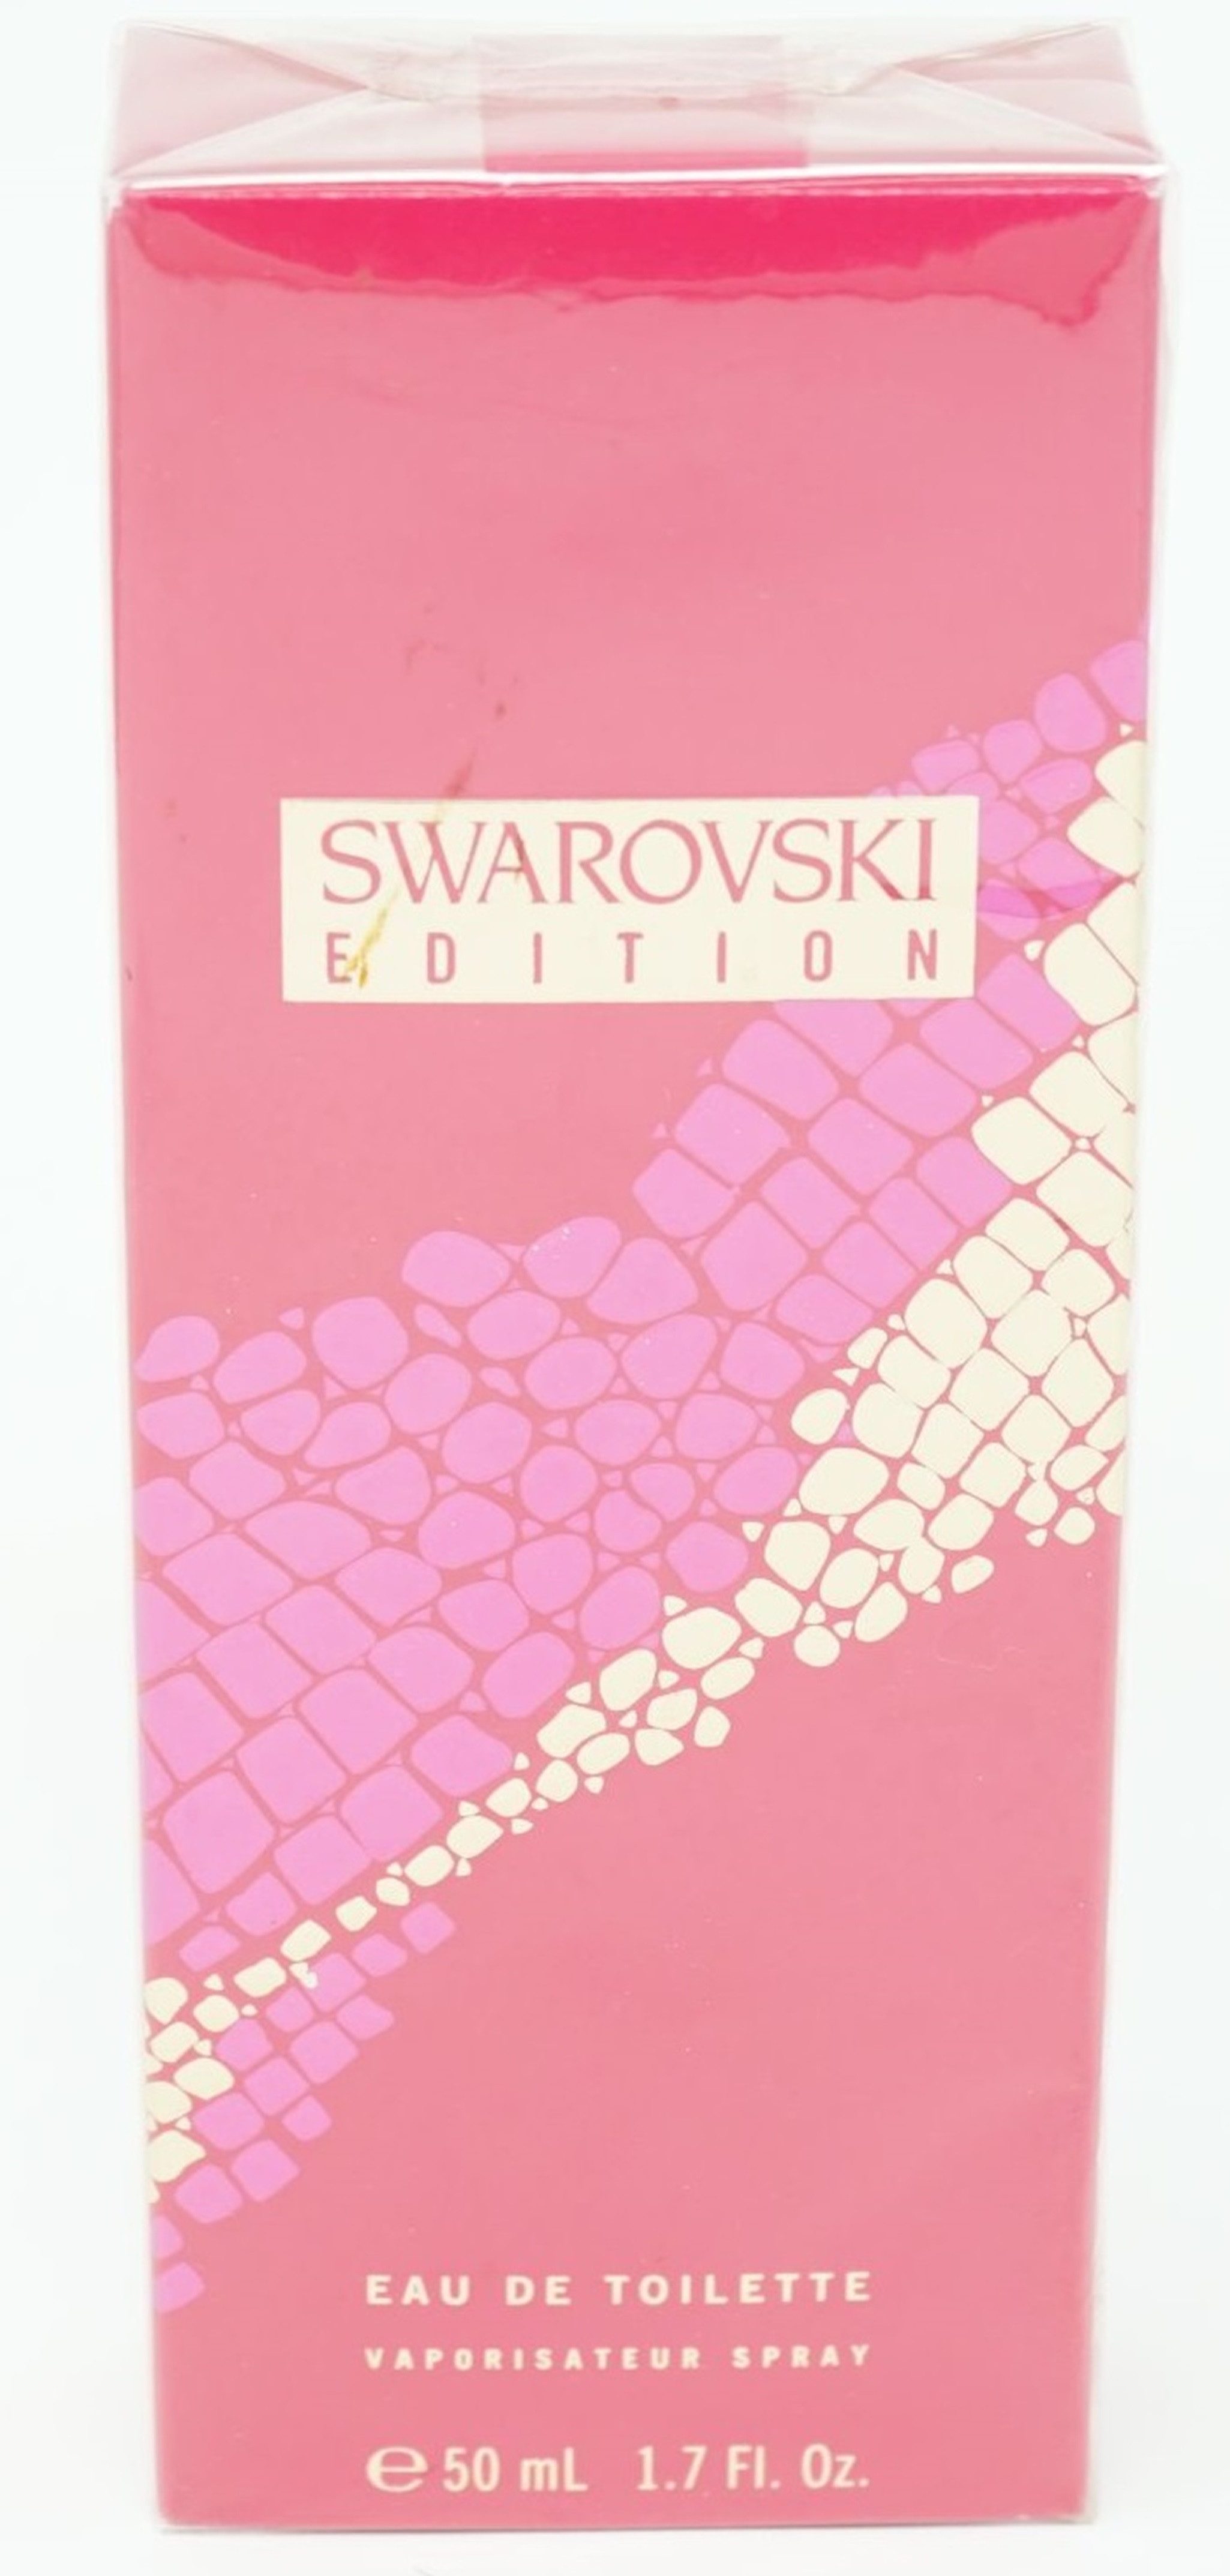 Swarovski Eau de Toilette Swarovski Edition Eau de Toilette Spray 50 ml